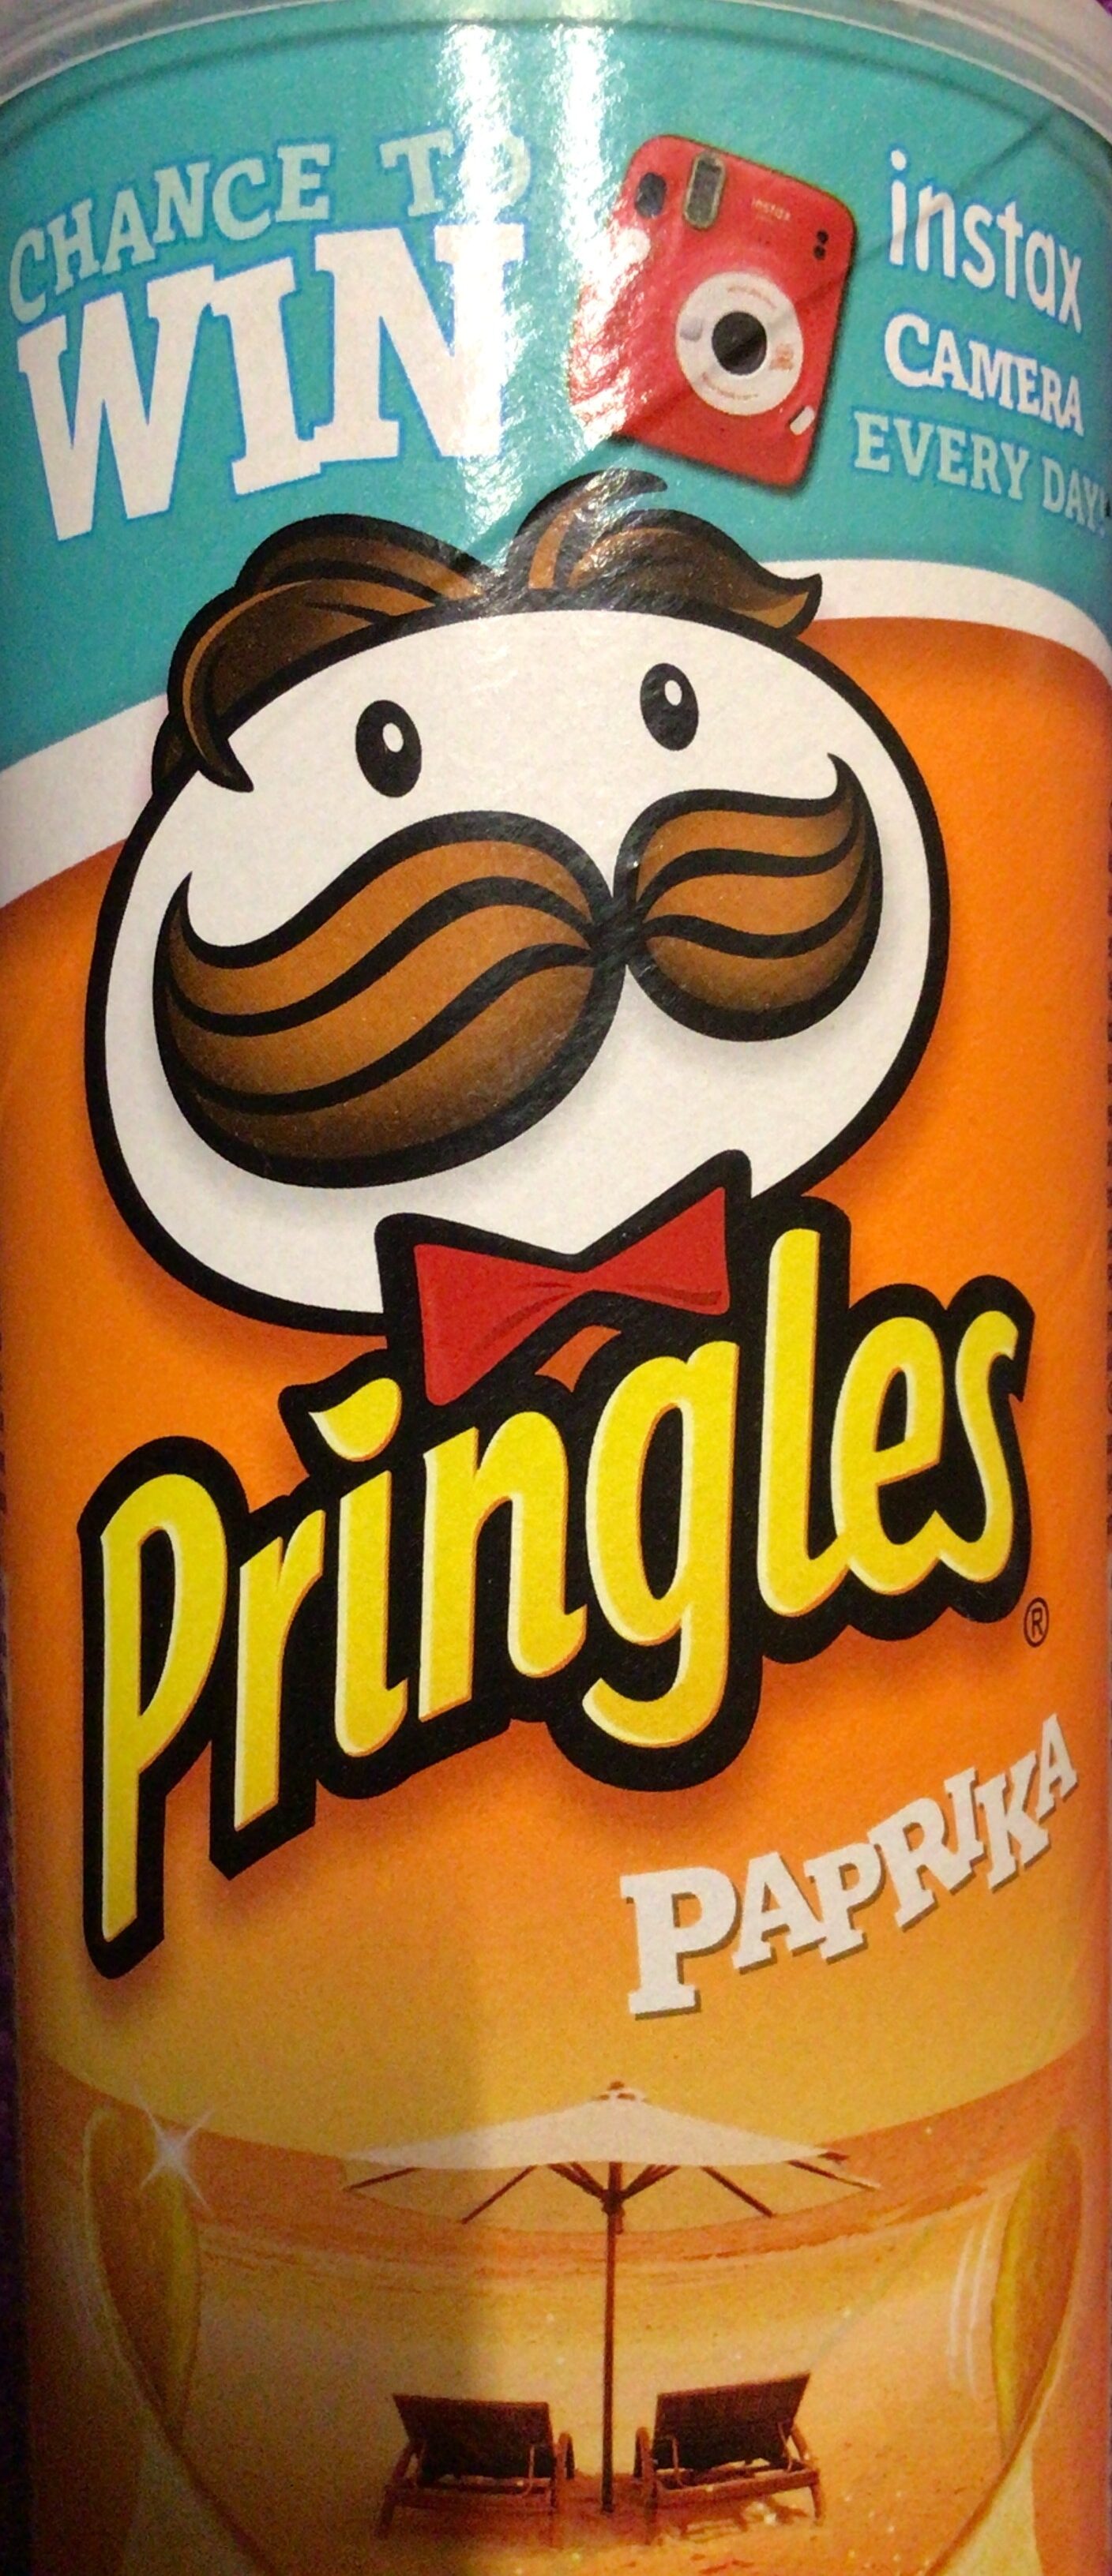 Pringles Paprika - نتاج - xx